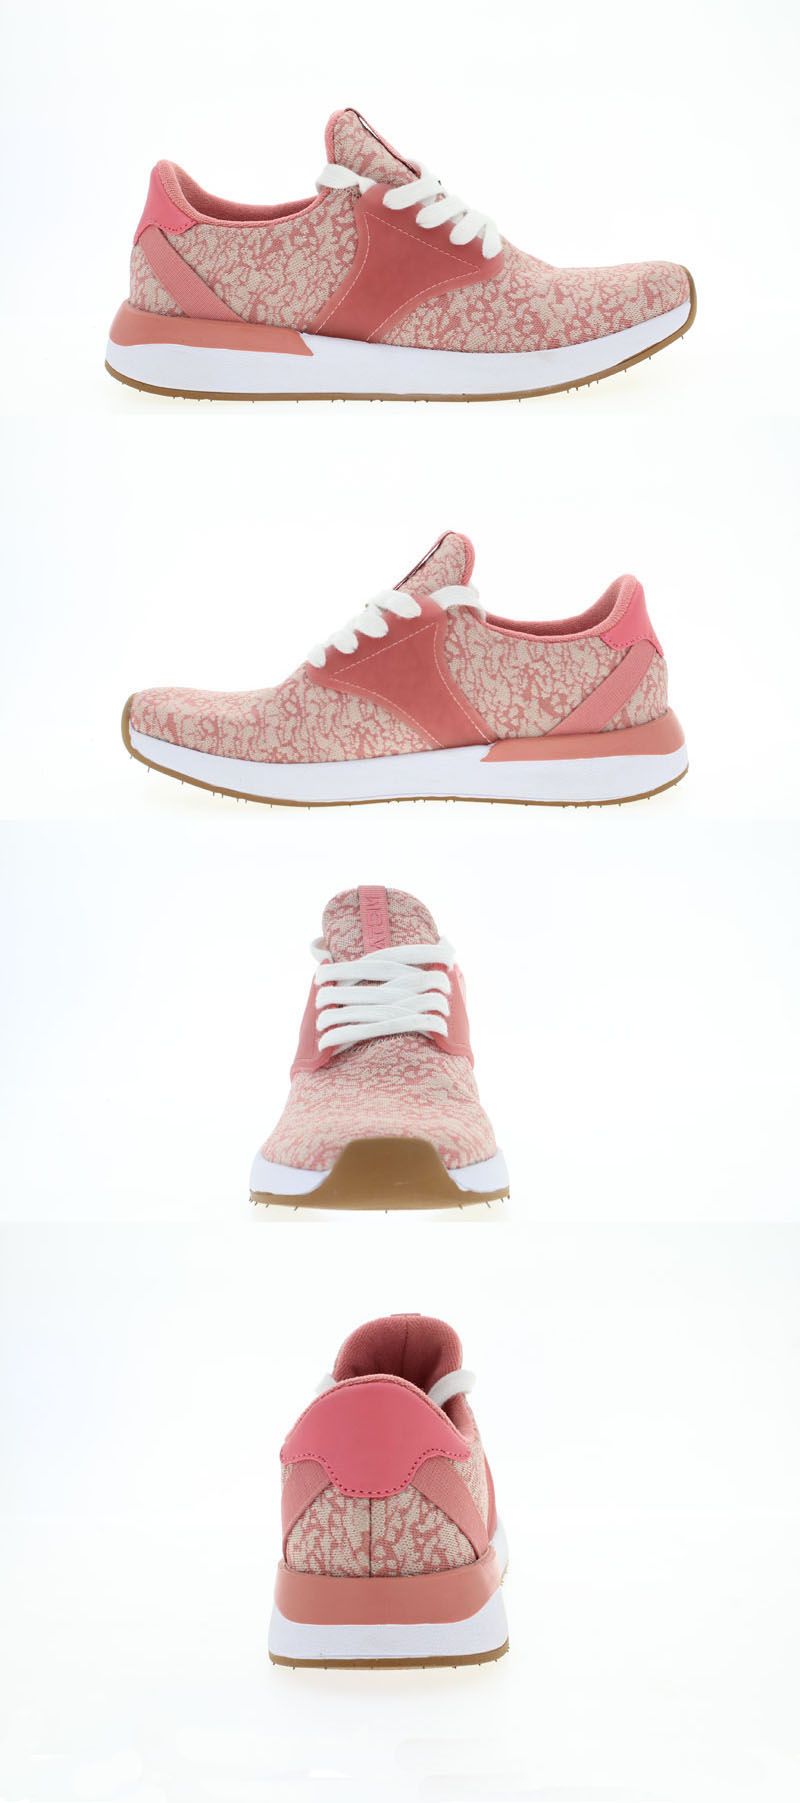 Pink light khaki color shoes